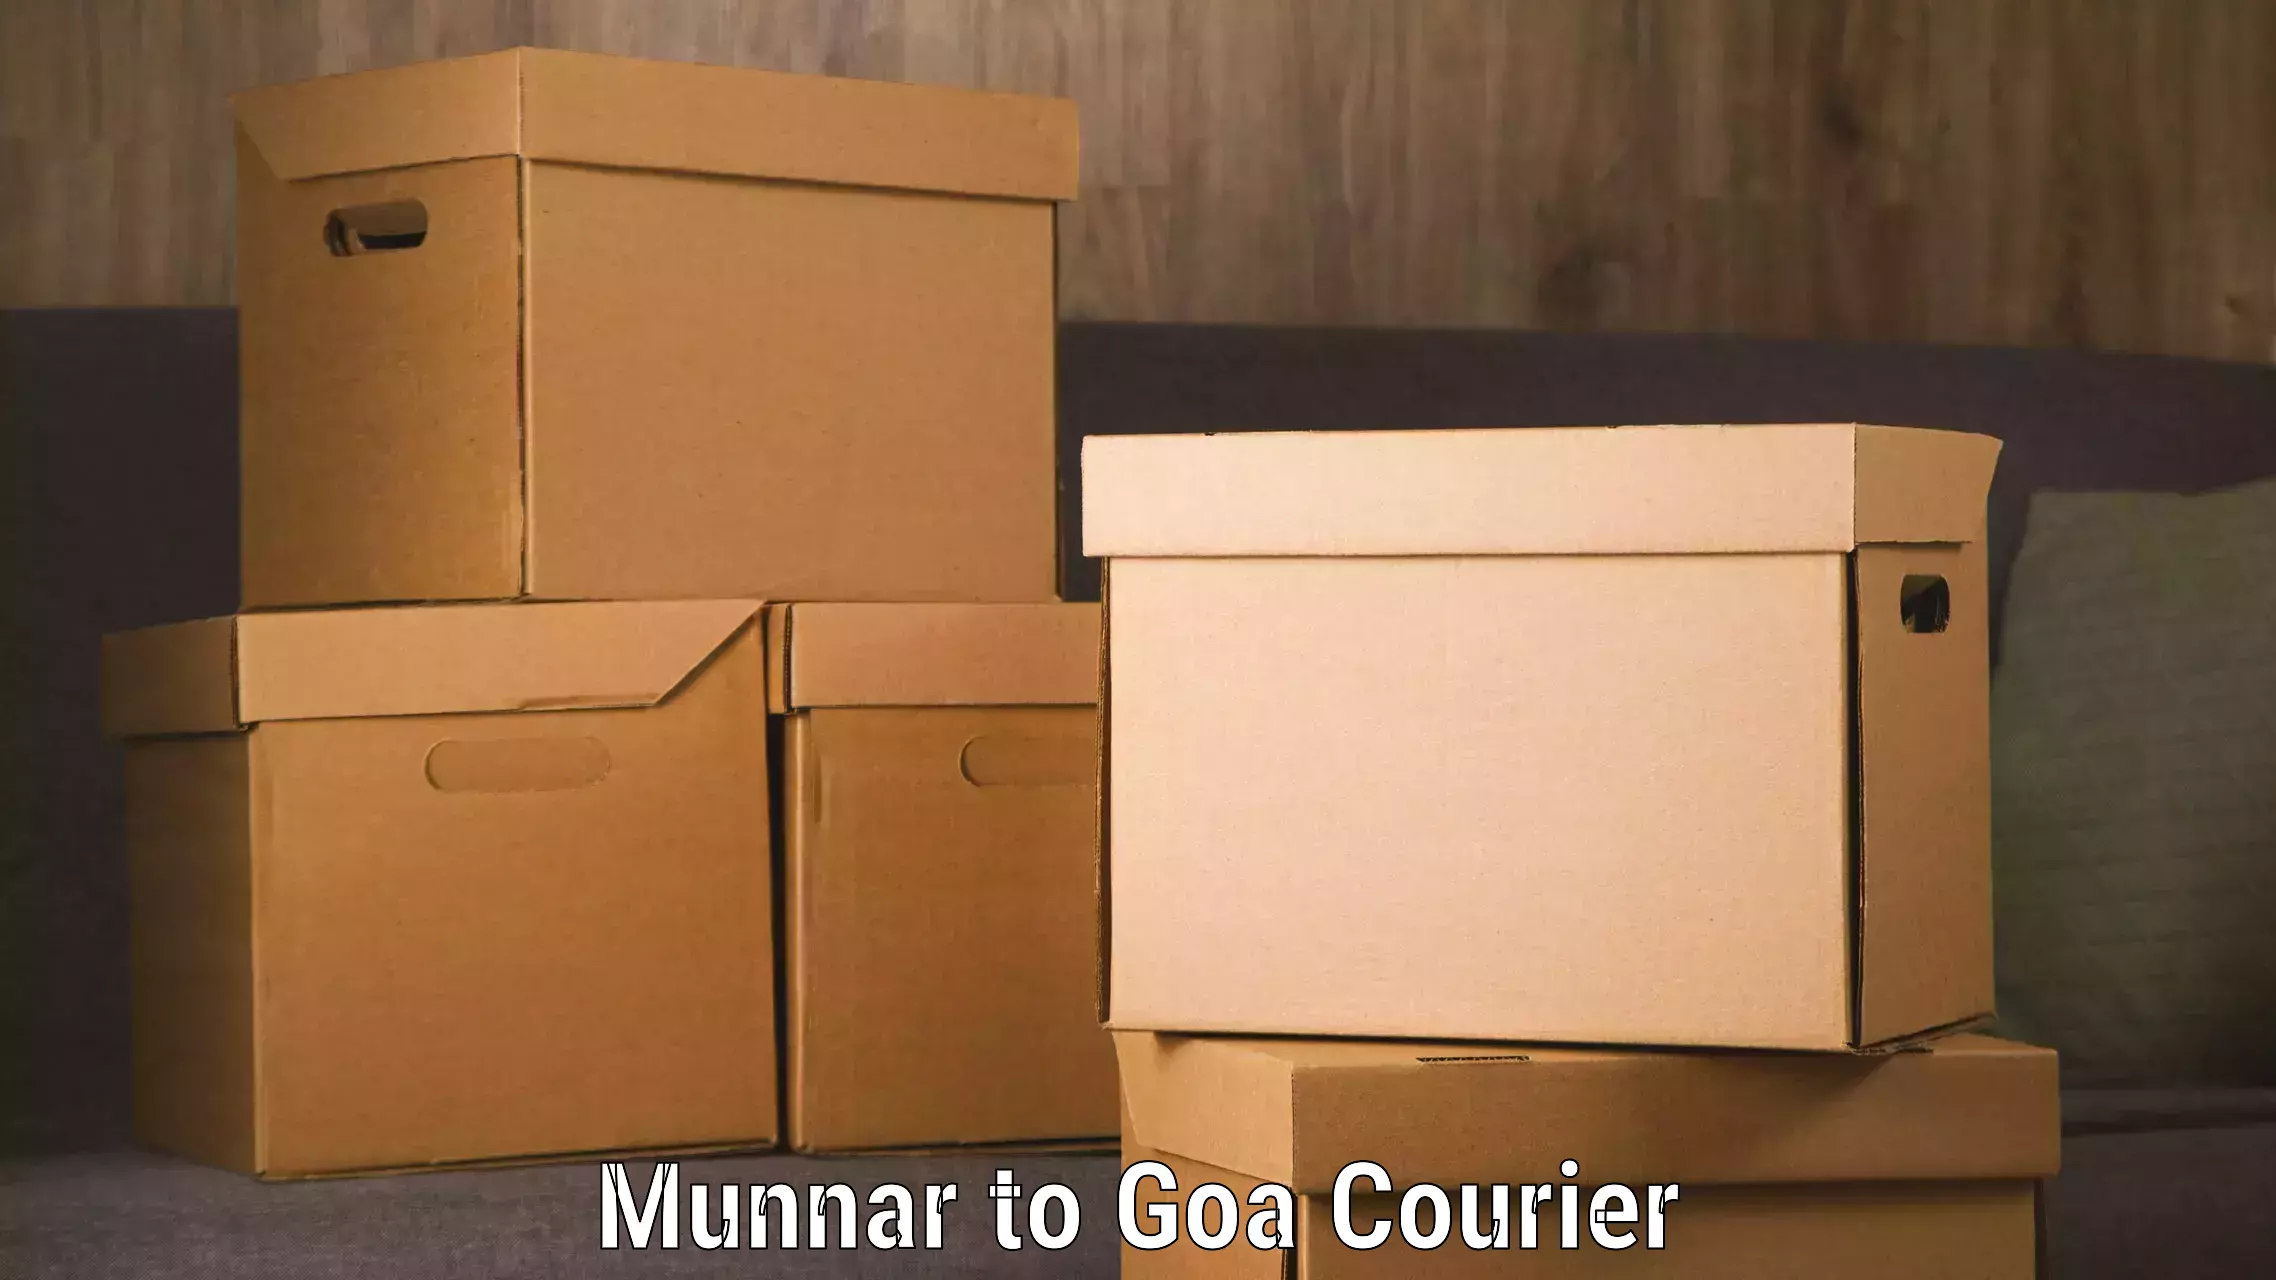 Local delivery service Munnar to Vasco da Gama